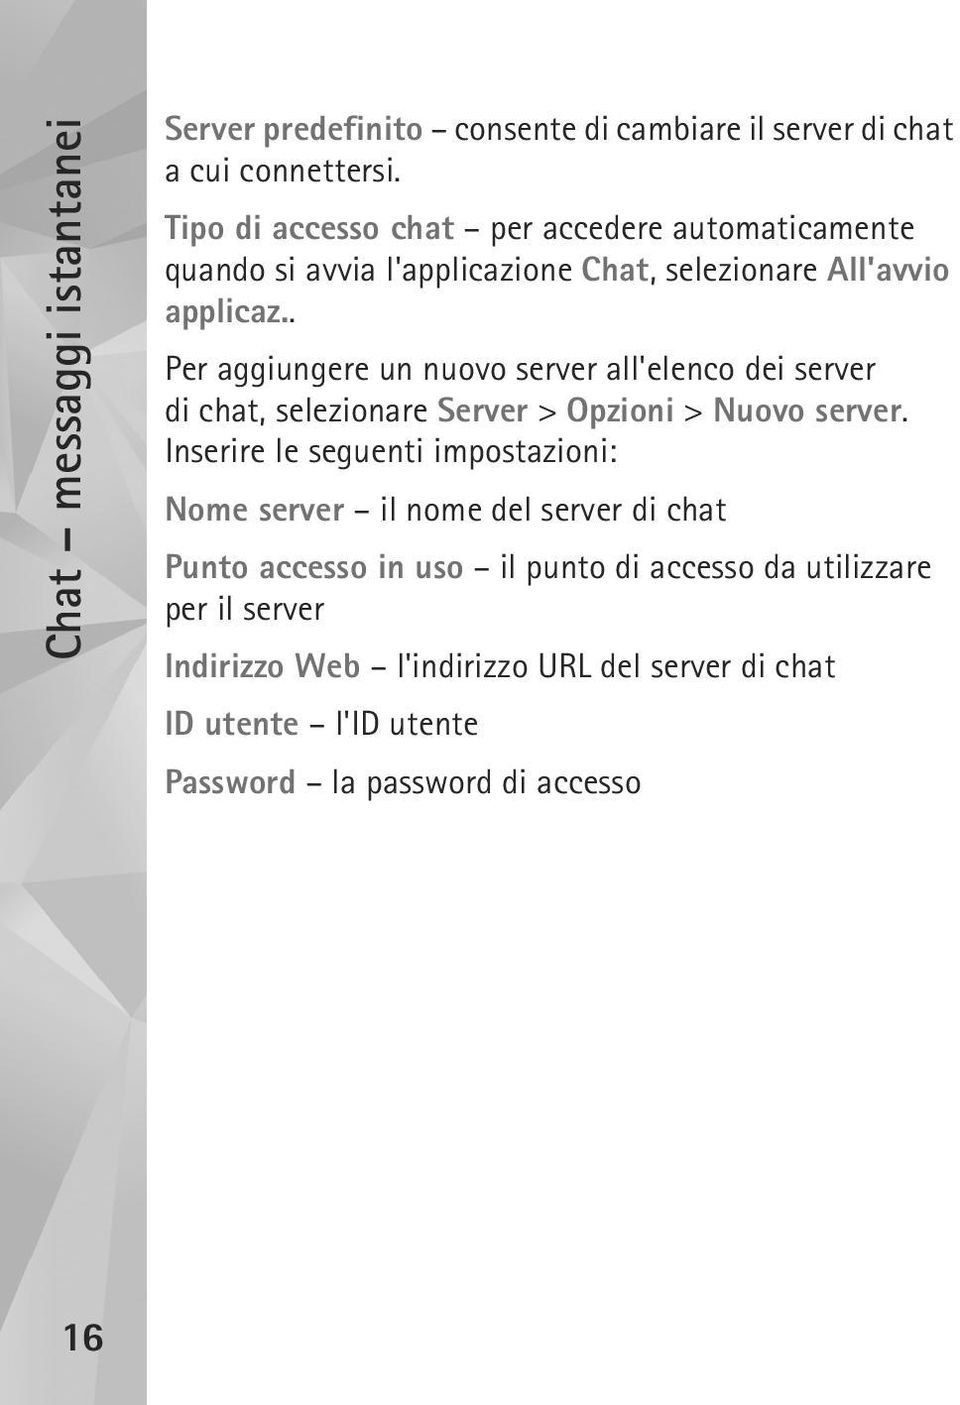 . Per aggiungere un nuovo server all'elenco dei server di chat, selezionare Server > Opzioni > Nuovo server.